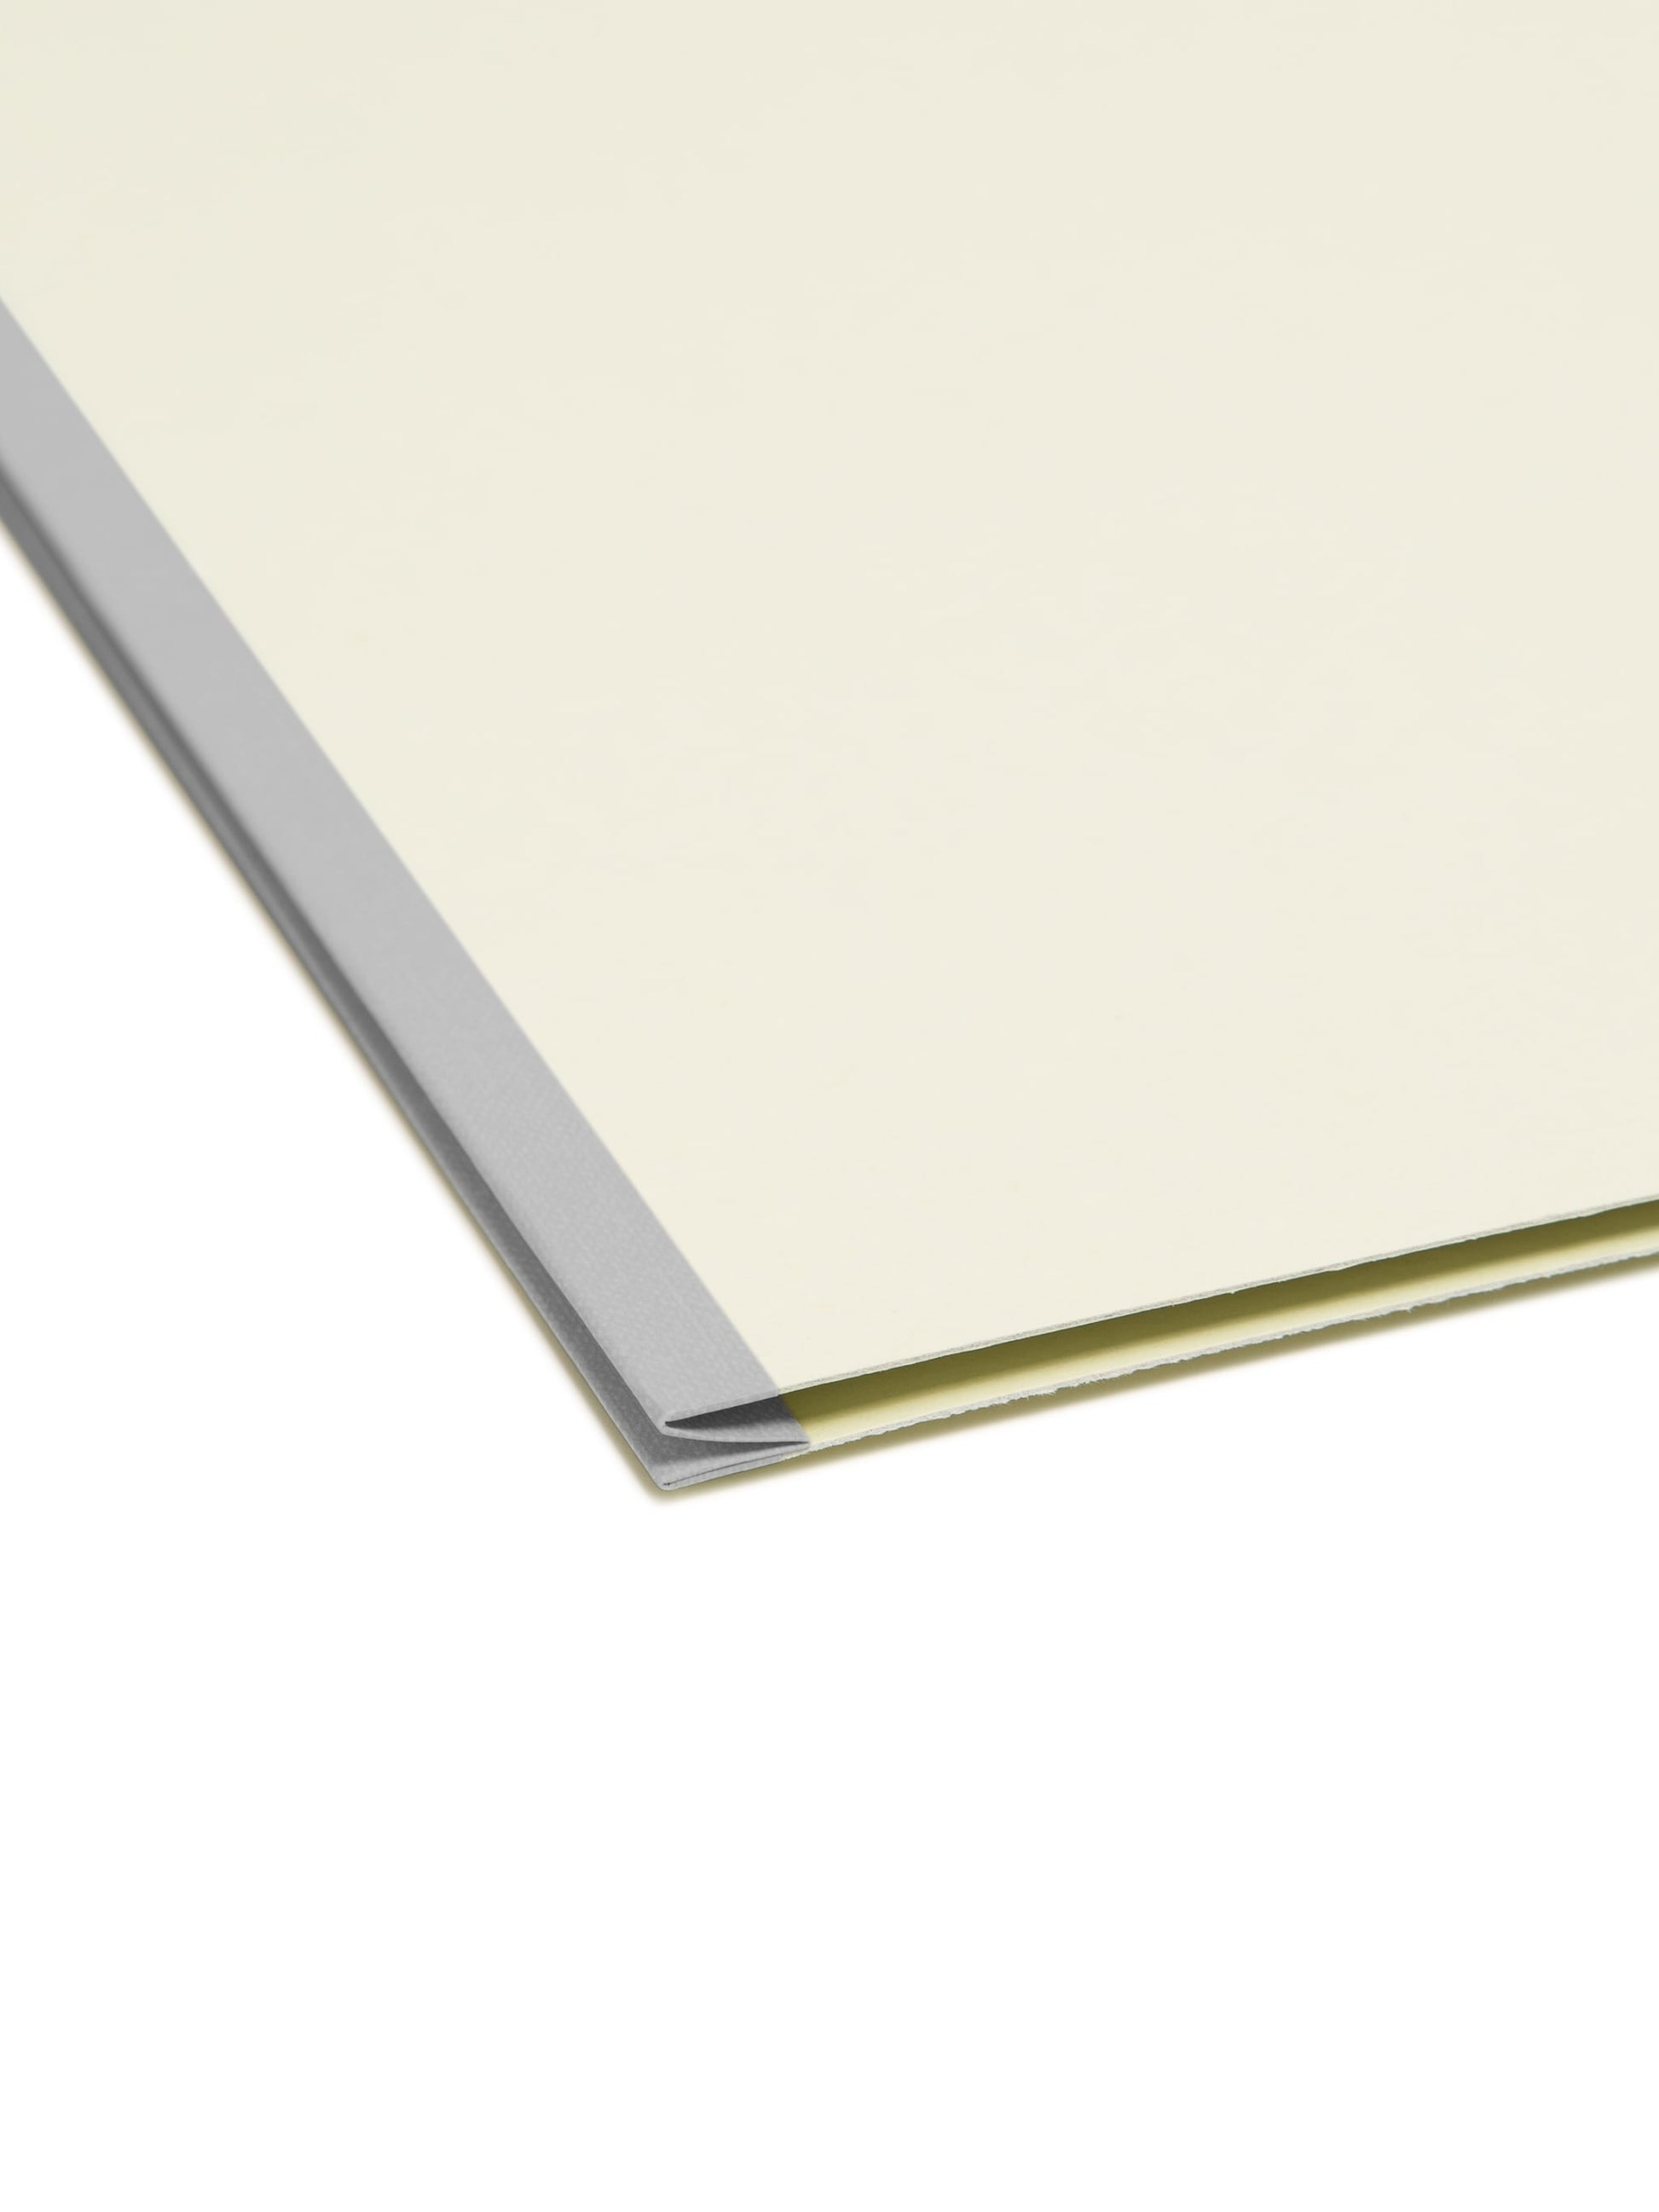 Pressboard Fastener File Folders, 1 inch Expansion, Gray/Green Color, Letter Size, Set of 25, 086486150033